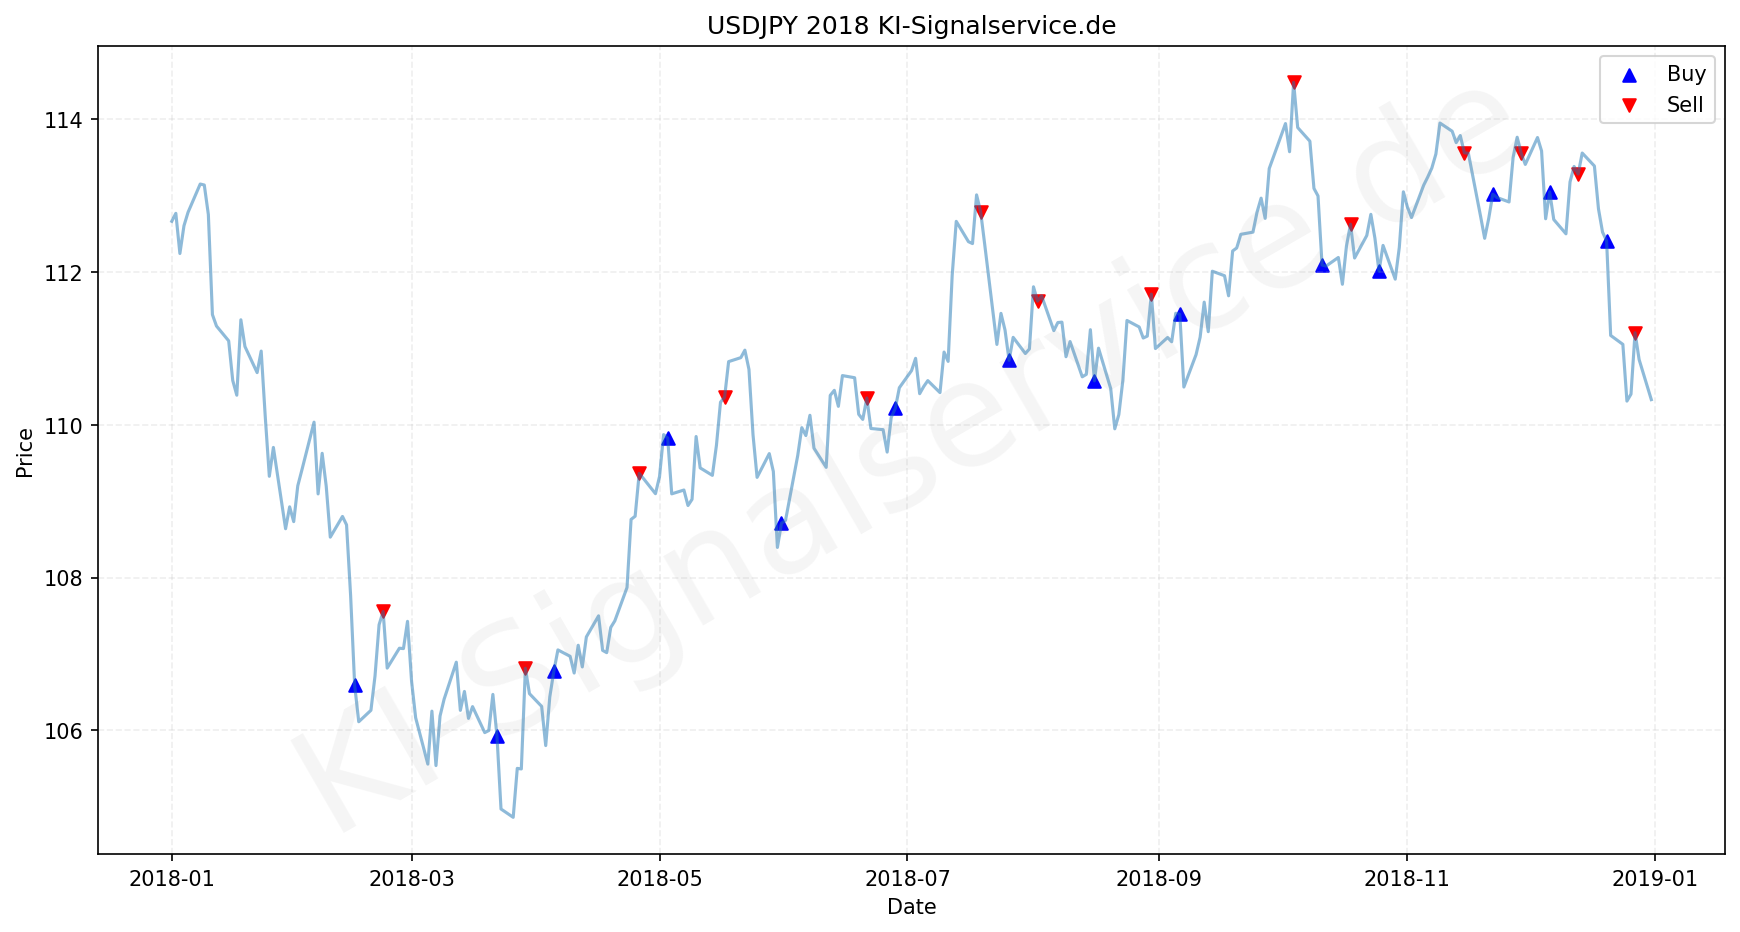 USDJPY Chart - KI Tradingsignale 2018